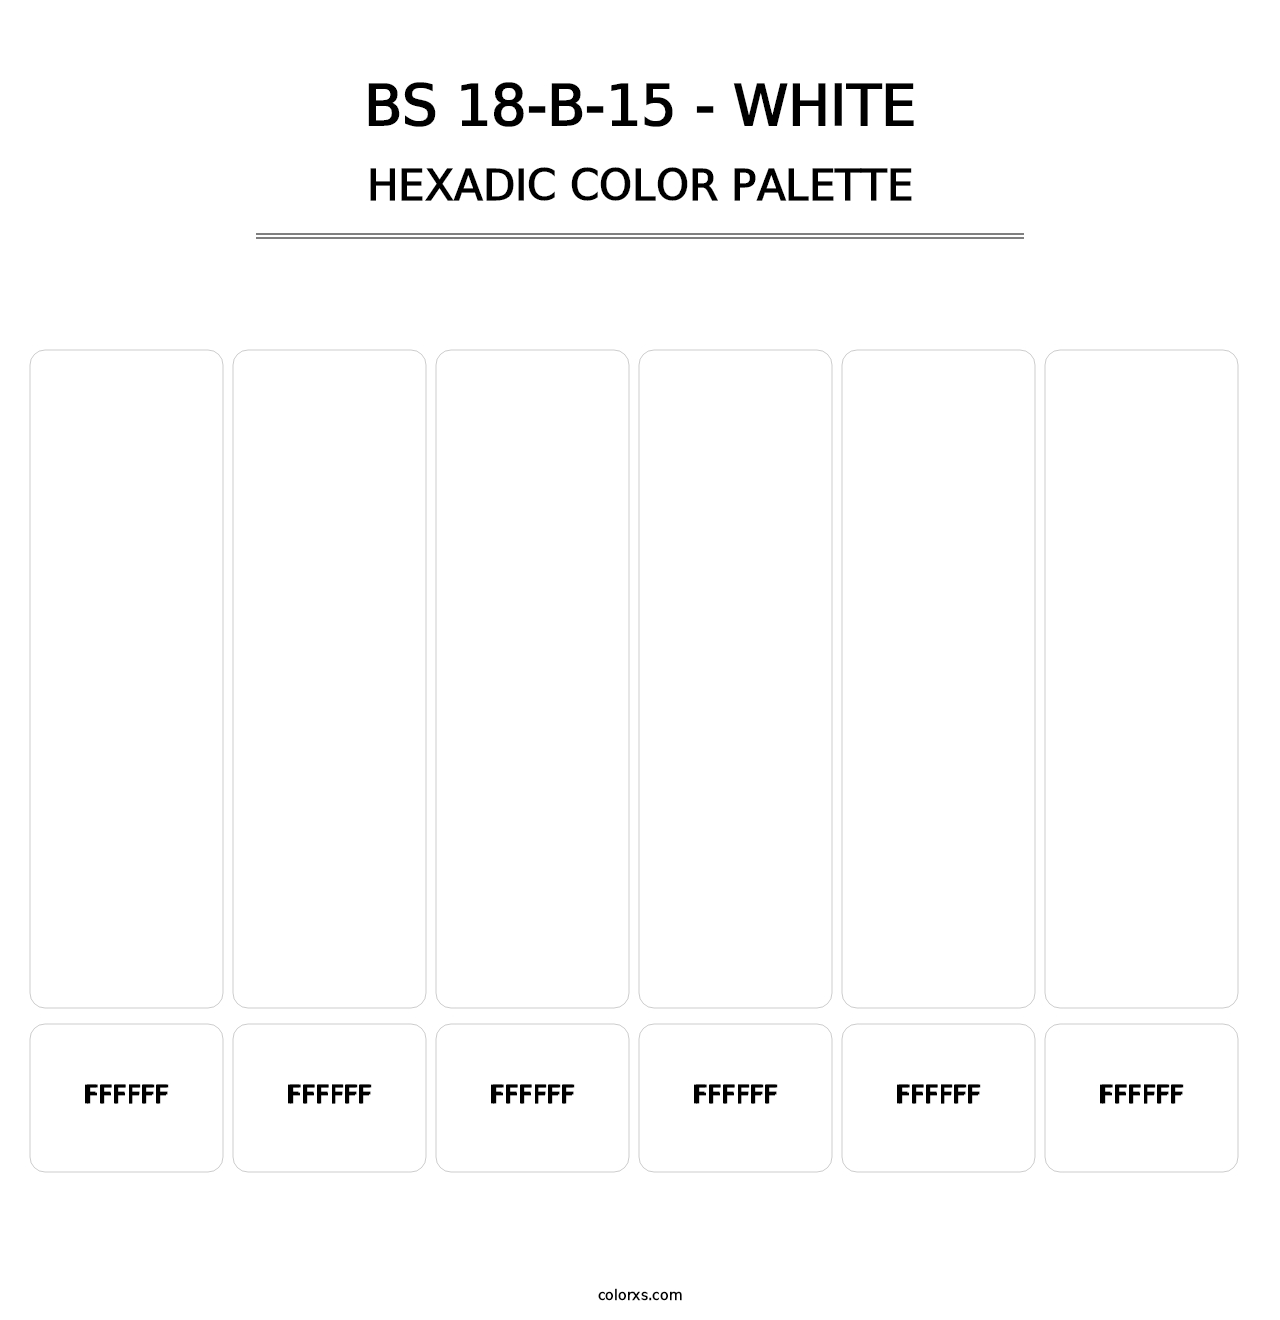 BS 18-B-15 - White - Hexadic Color Palette